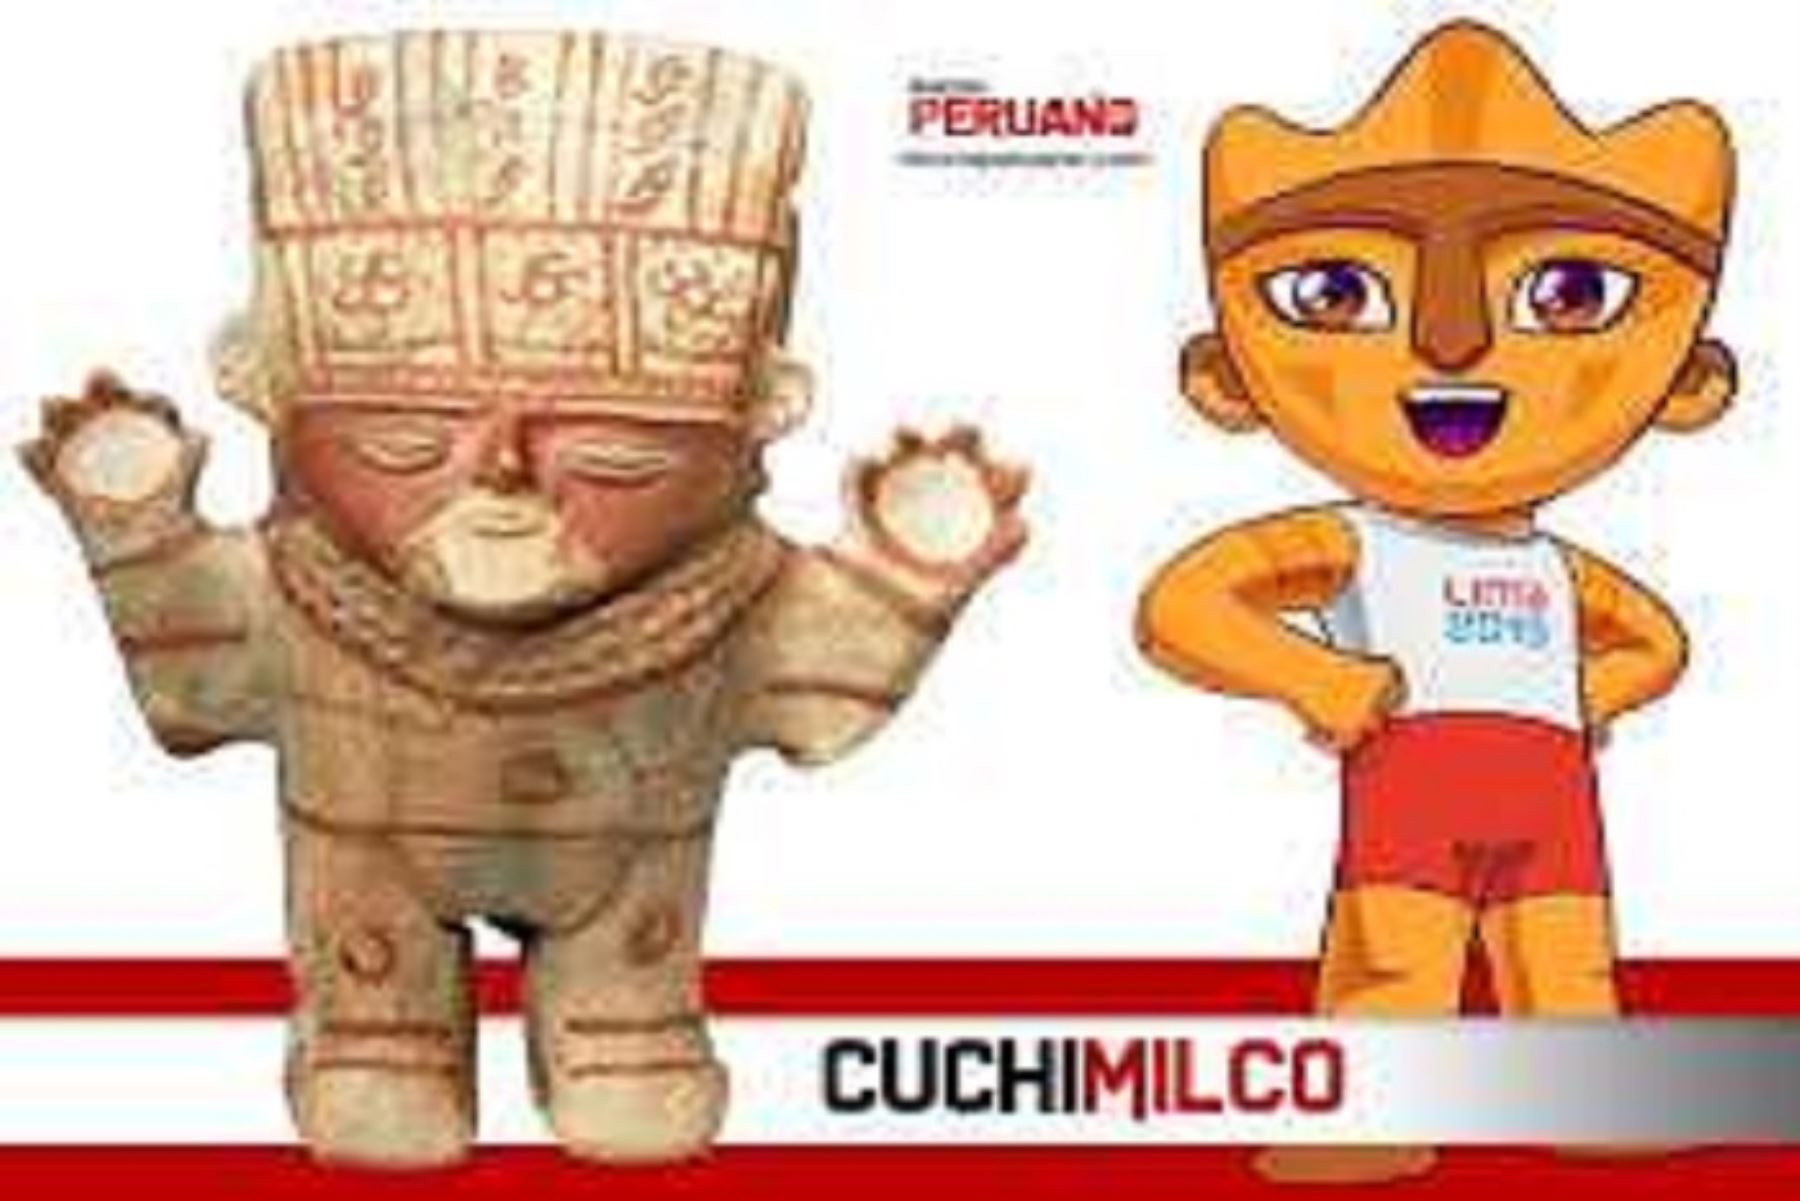 En los recientes Juegos Panamericanos Lima 2019 la cultura Chancay ha recobrado mucho interés tanto en los peruanos como en los turistas extranjeros, ya que Milco, la mascota oficial de este importante evento deportivo, fue inspirado en los cuchimilcos, estatuillas de arcilla halladas en los sitios arqueológicos de la citada cultura.